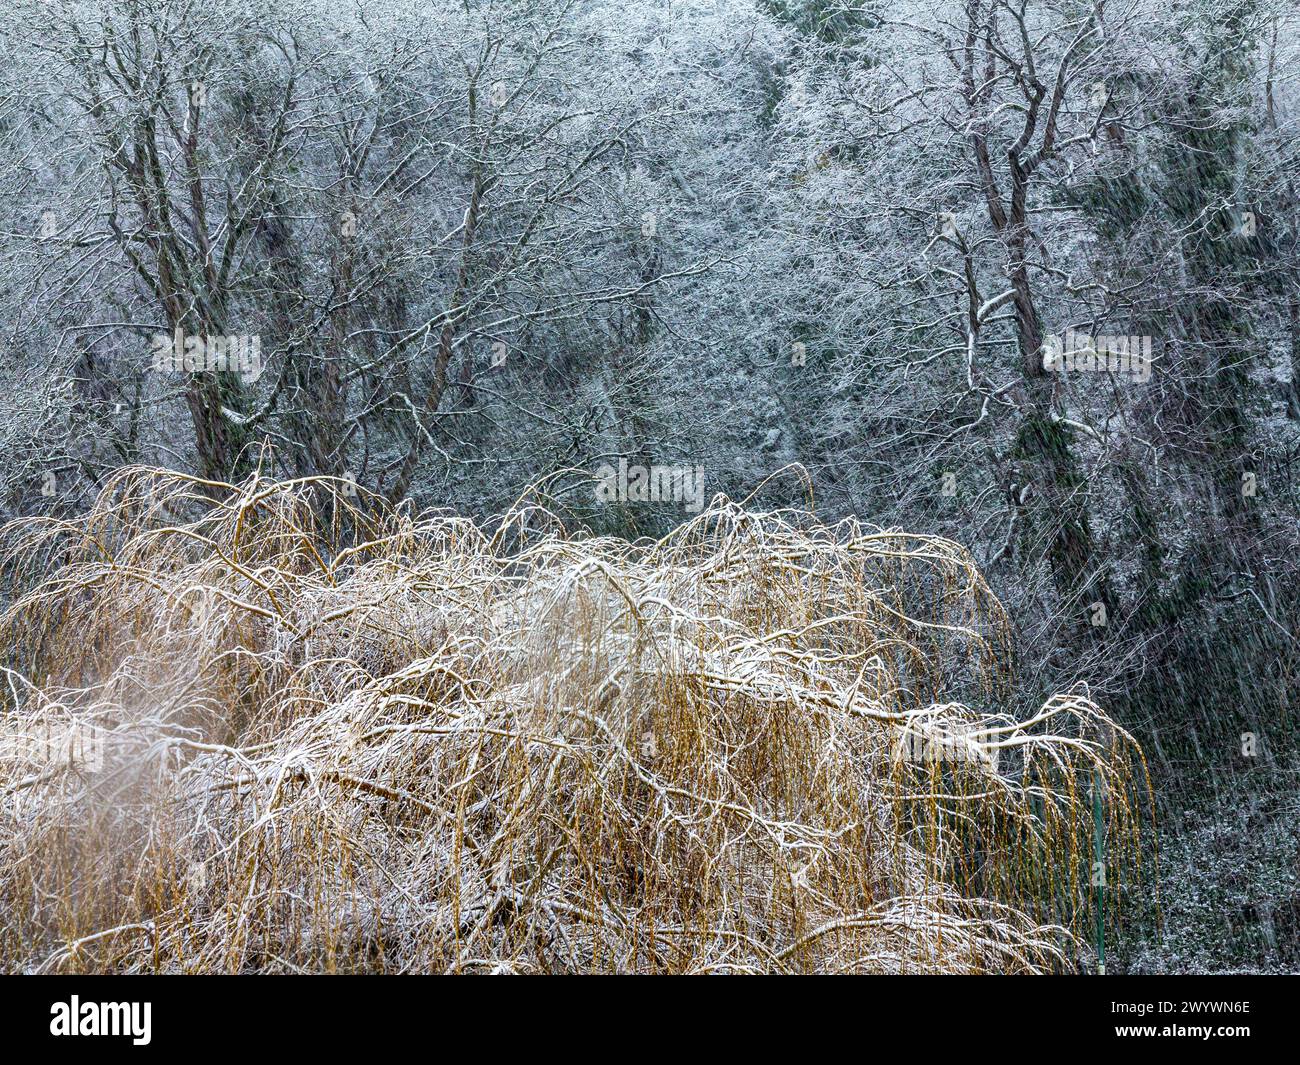 Paysage couvert de neige avec arbres à Matlock Bath dans le Derbyshire Peak District Angleterre Royaume-Uni. Banque D'Images